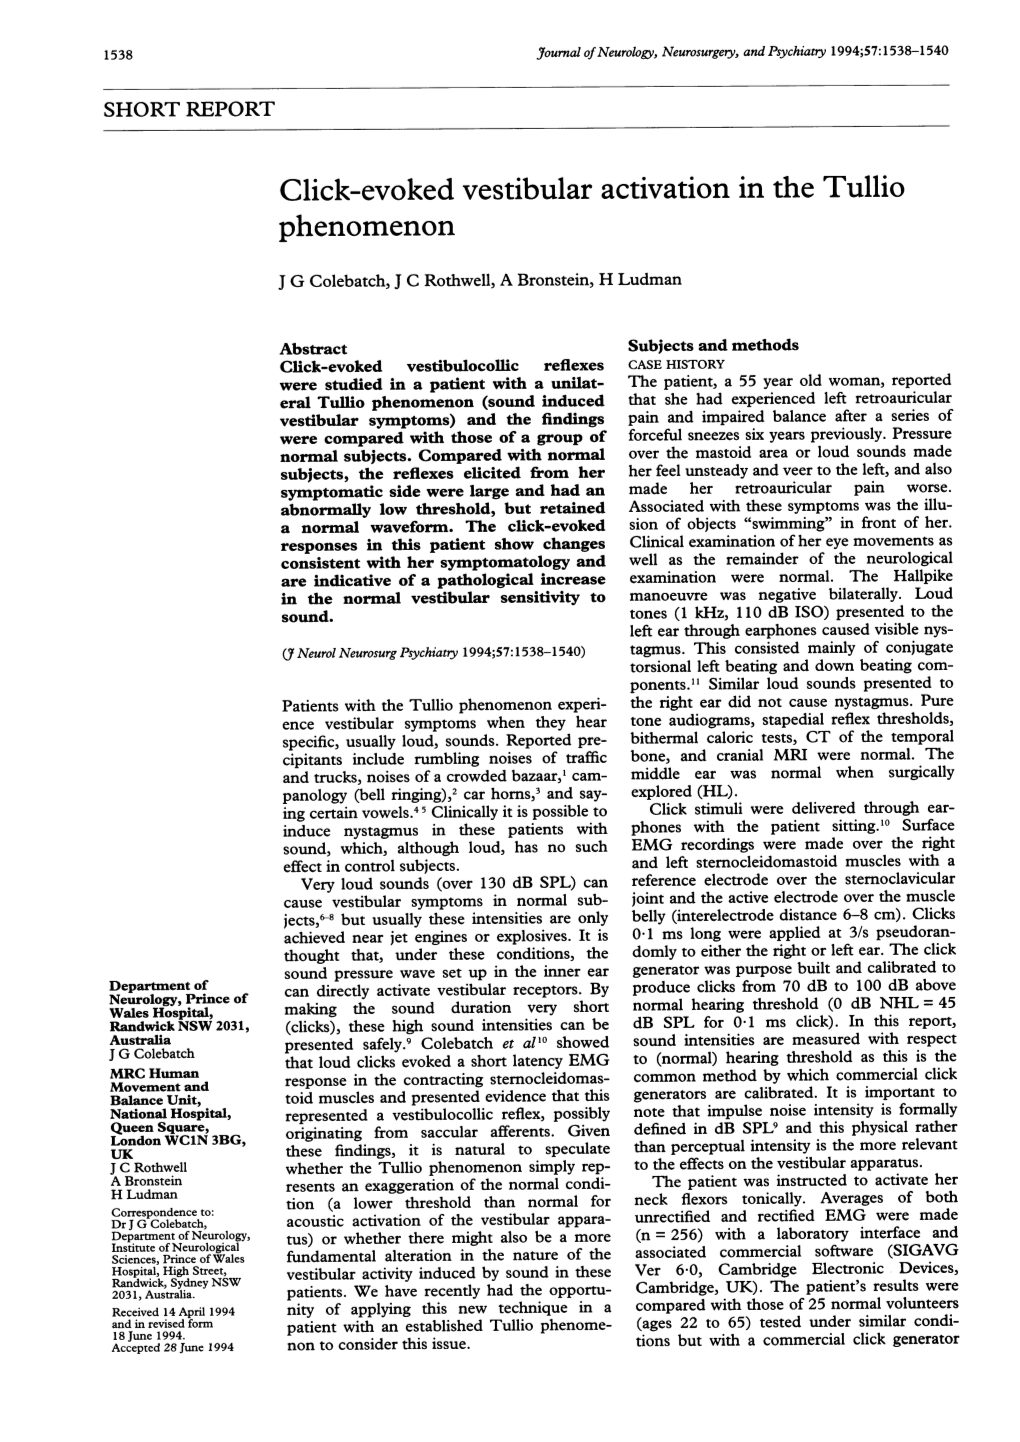 Click-Evoked Vestibular Activation in the Tullio Phenomenon